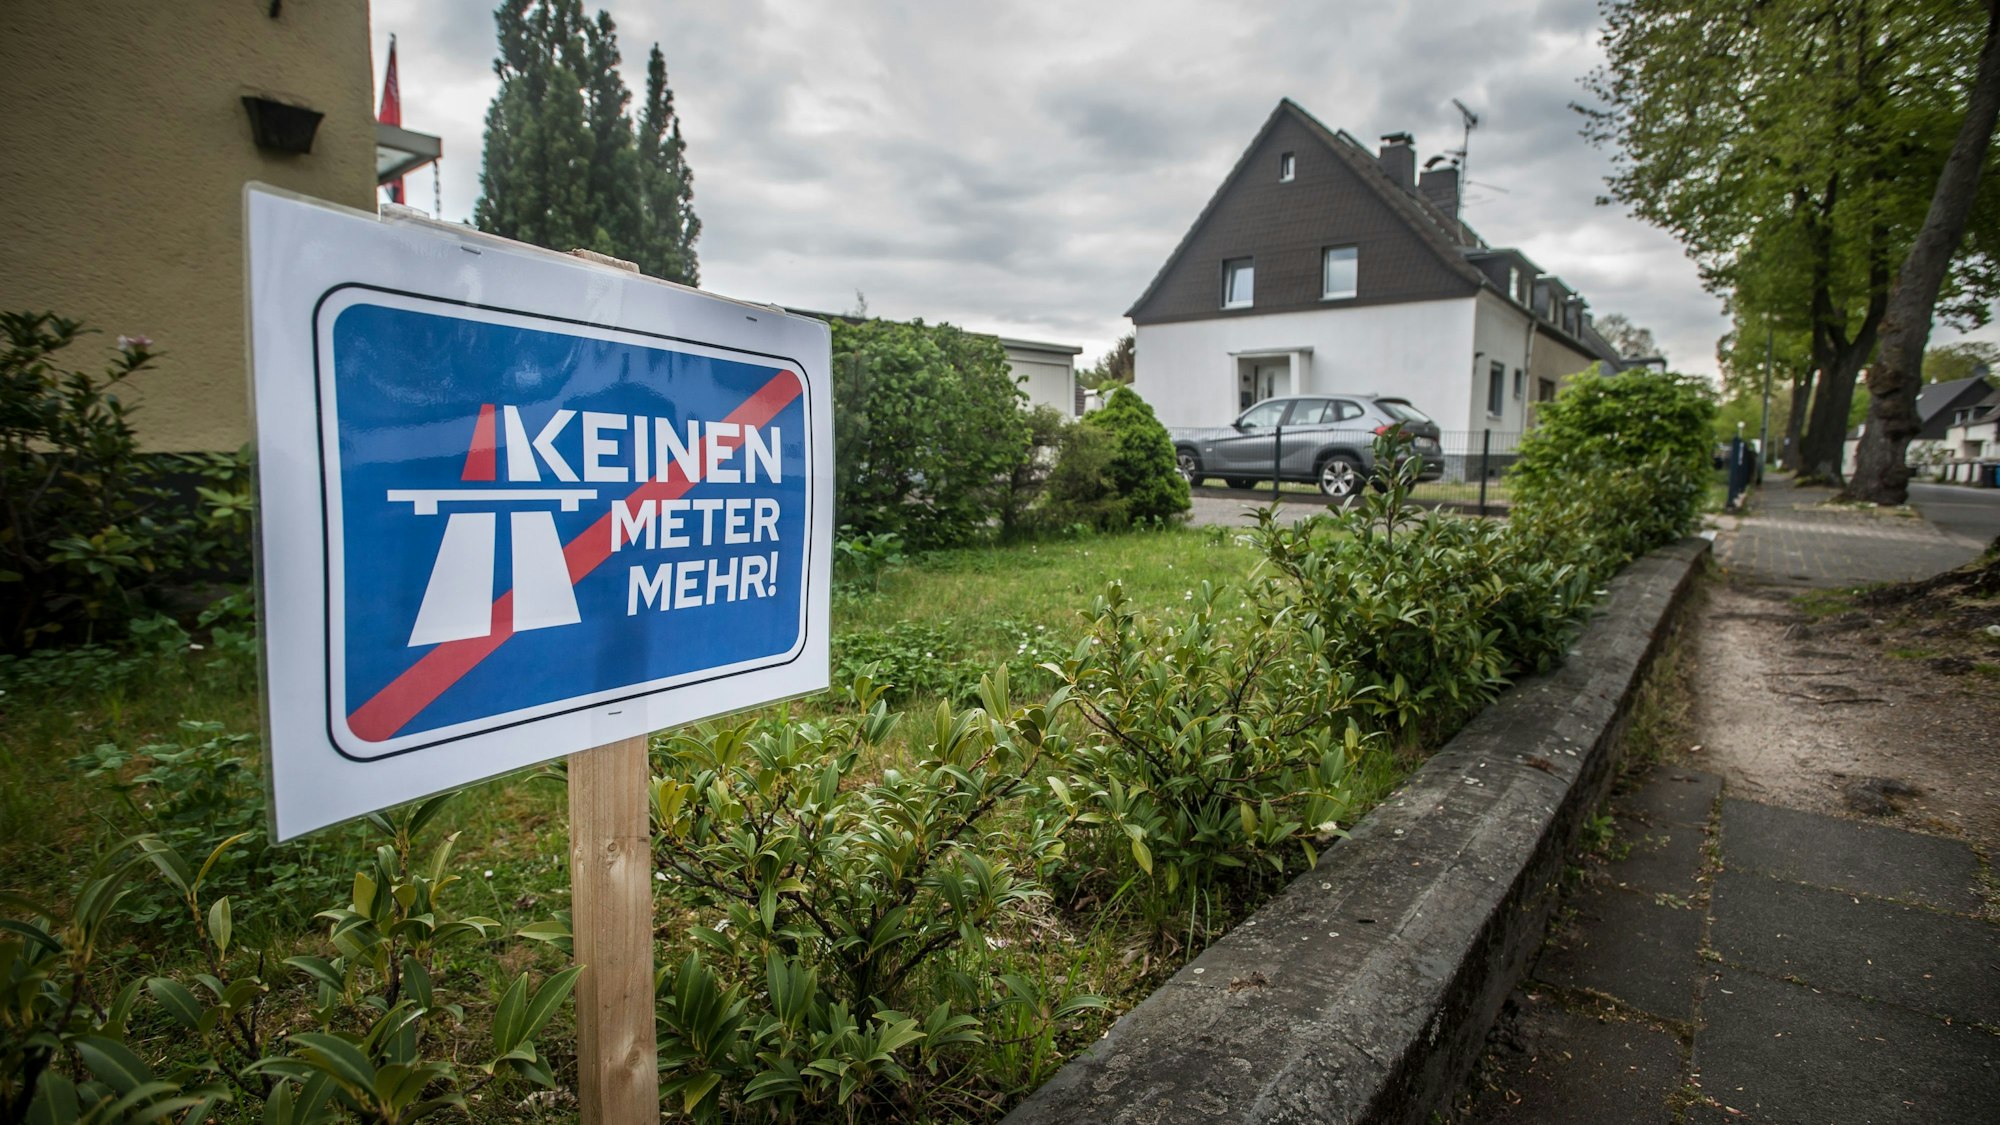 Ein Schild der Initiative „Keinen Meter mehr!“ steht in einem grünen Vorgarten, weiter hinten sind weitere Häuser und ein geparktes Auto zu sehen.